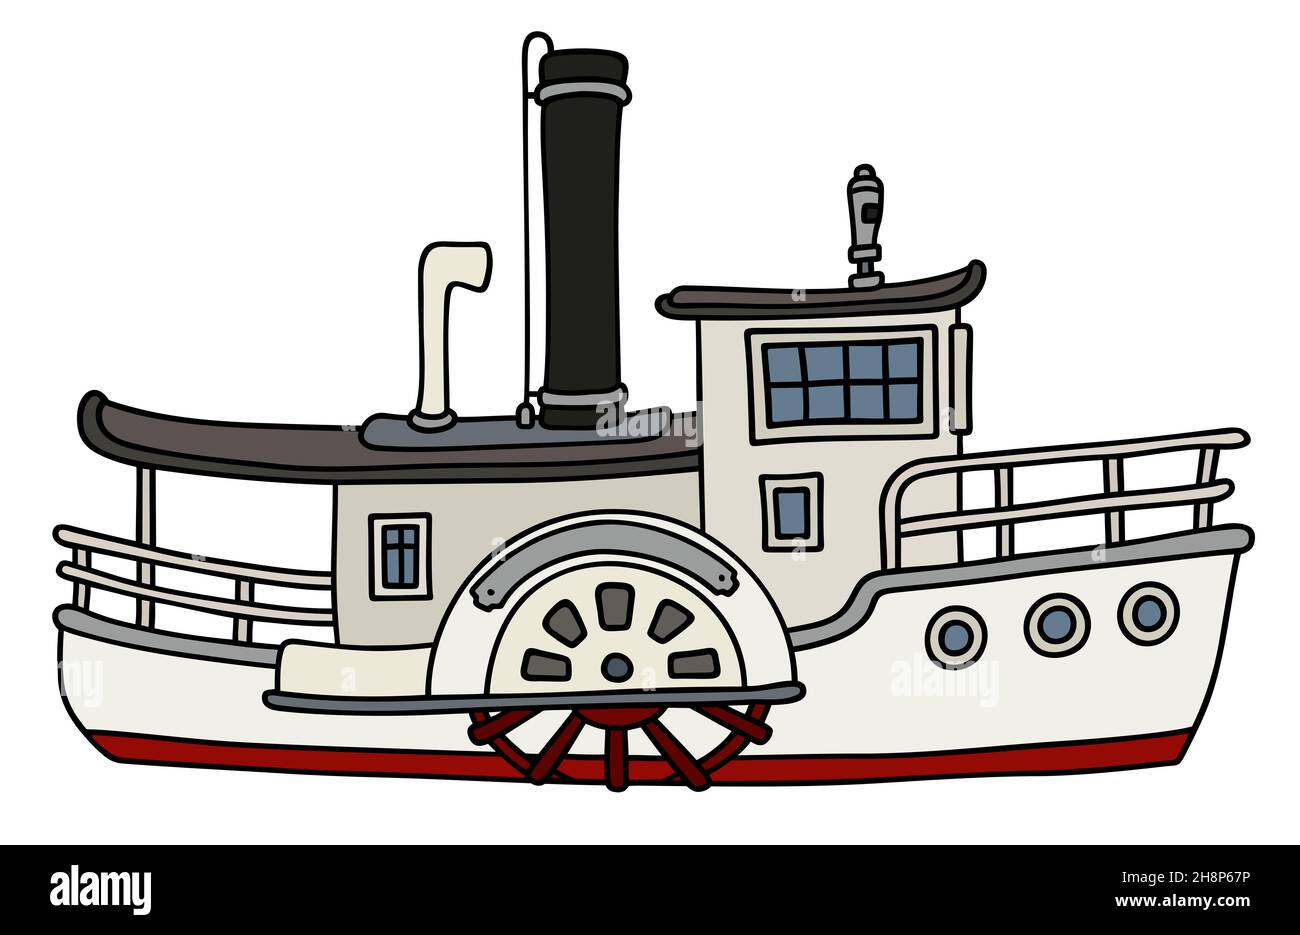 Dessin à la main d'un vieux bateau à vapeur à aubes blanc drôle Banque D'Images